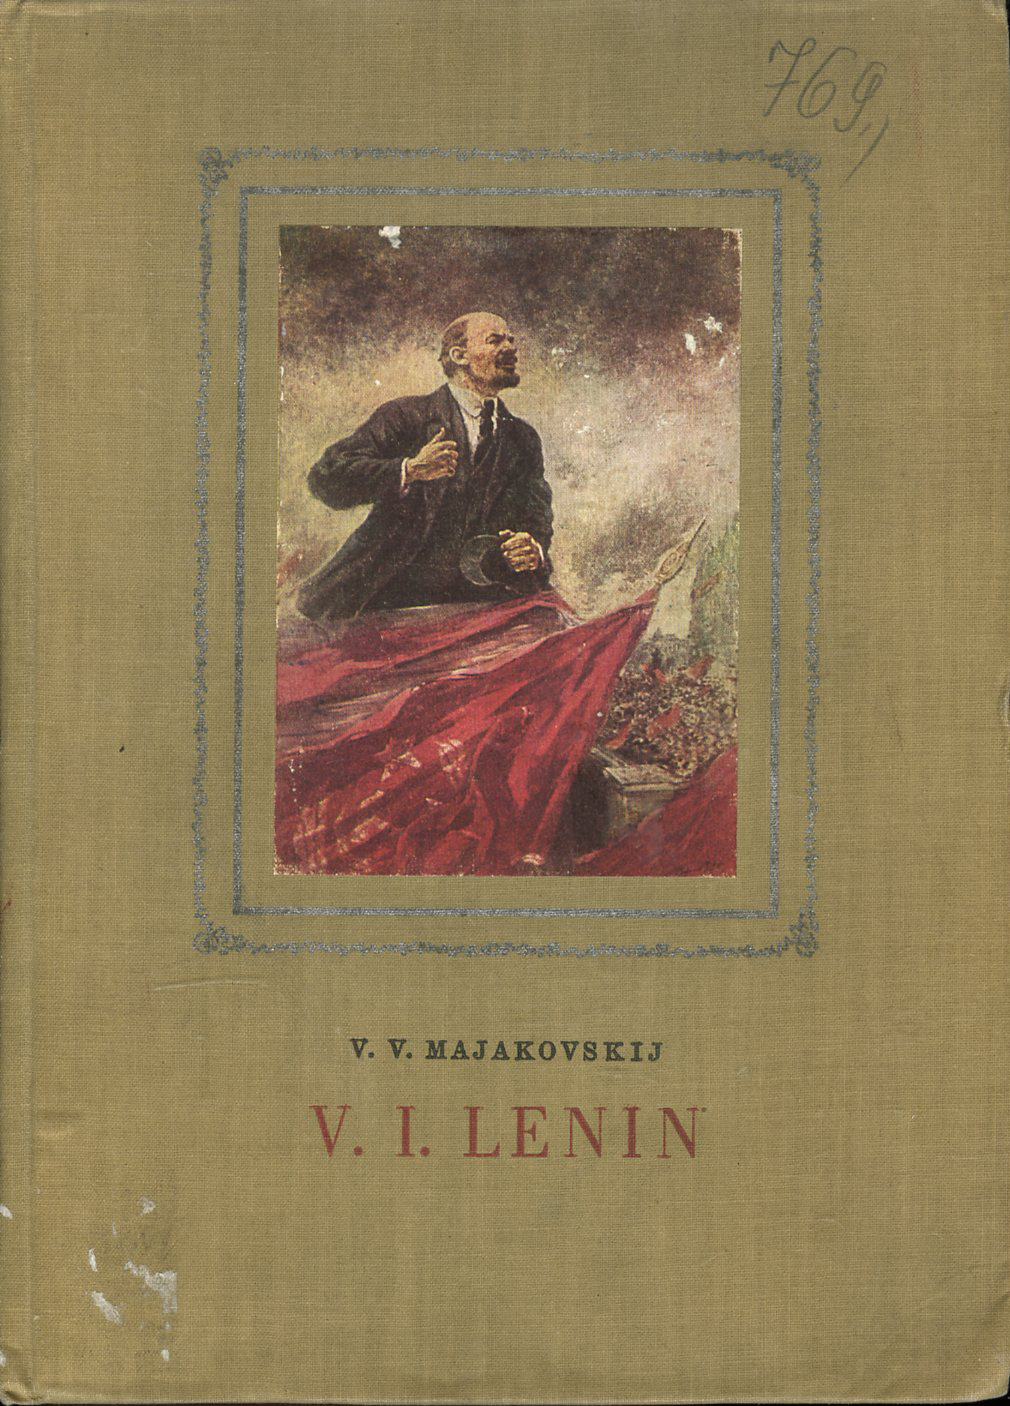 V. I. Lenin (Vladimír Majakovskij)